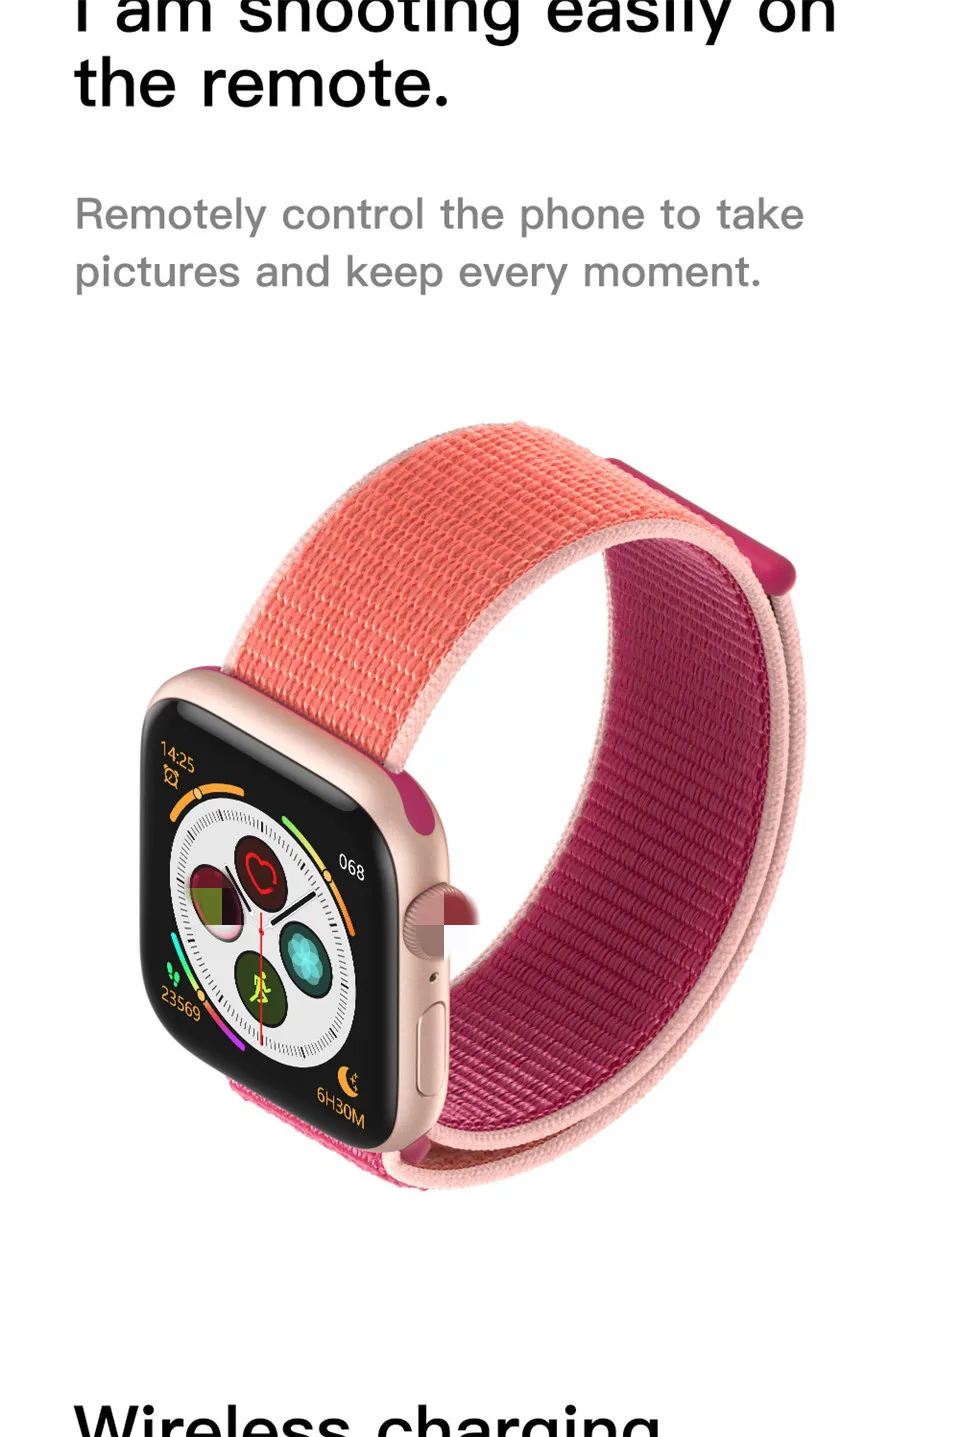 Прямая IWO 12 40 мм ЭКГ сердечного ритма женские умные часы серии 5 1:1 для Apple IOS Android умные часы iwo 11 8 плюс 9 10